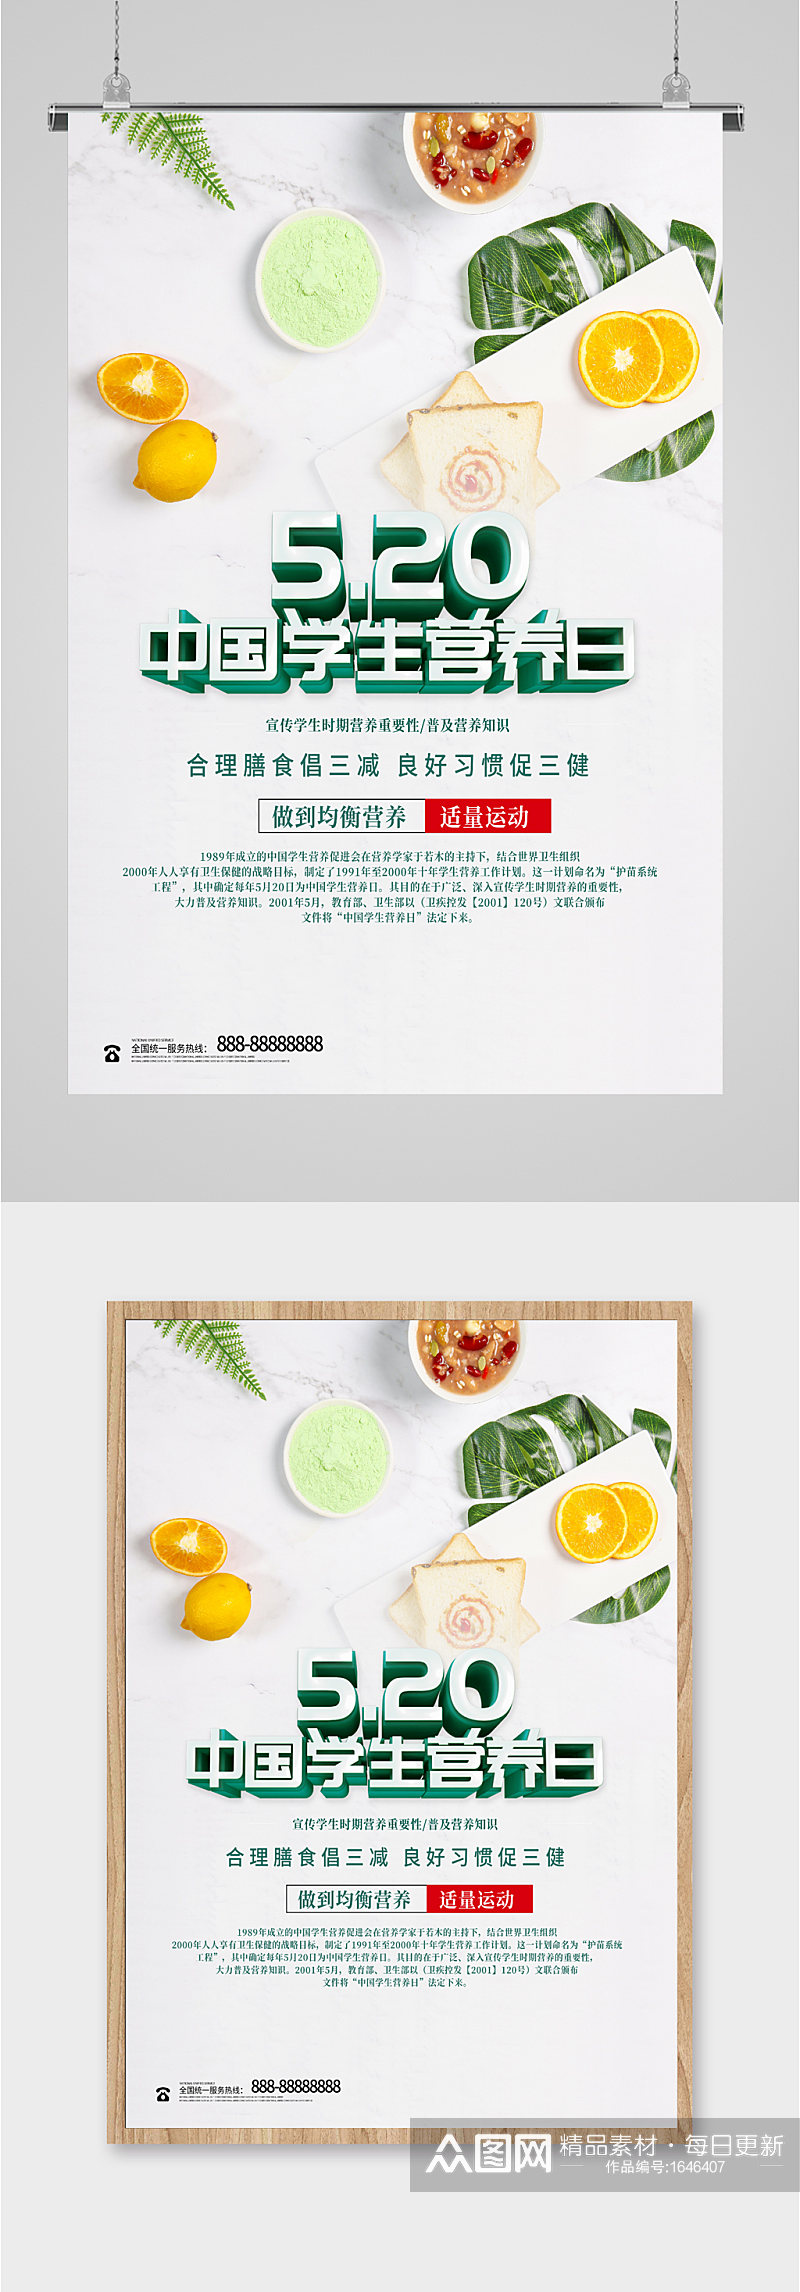 中国学生营养日海报素材